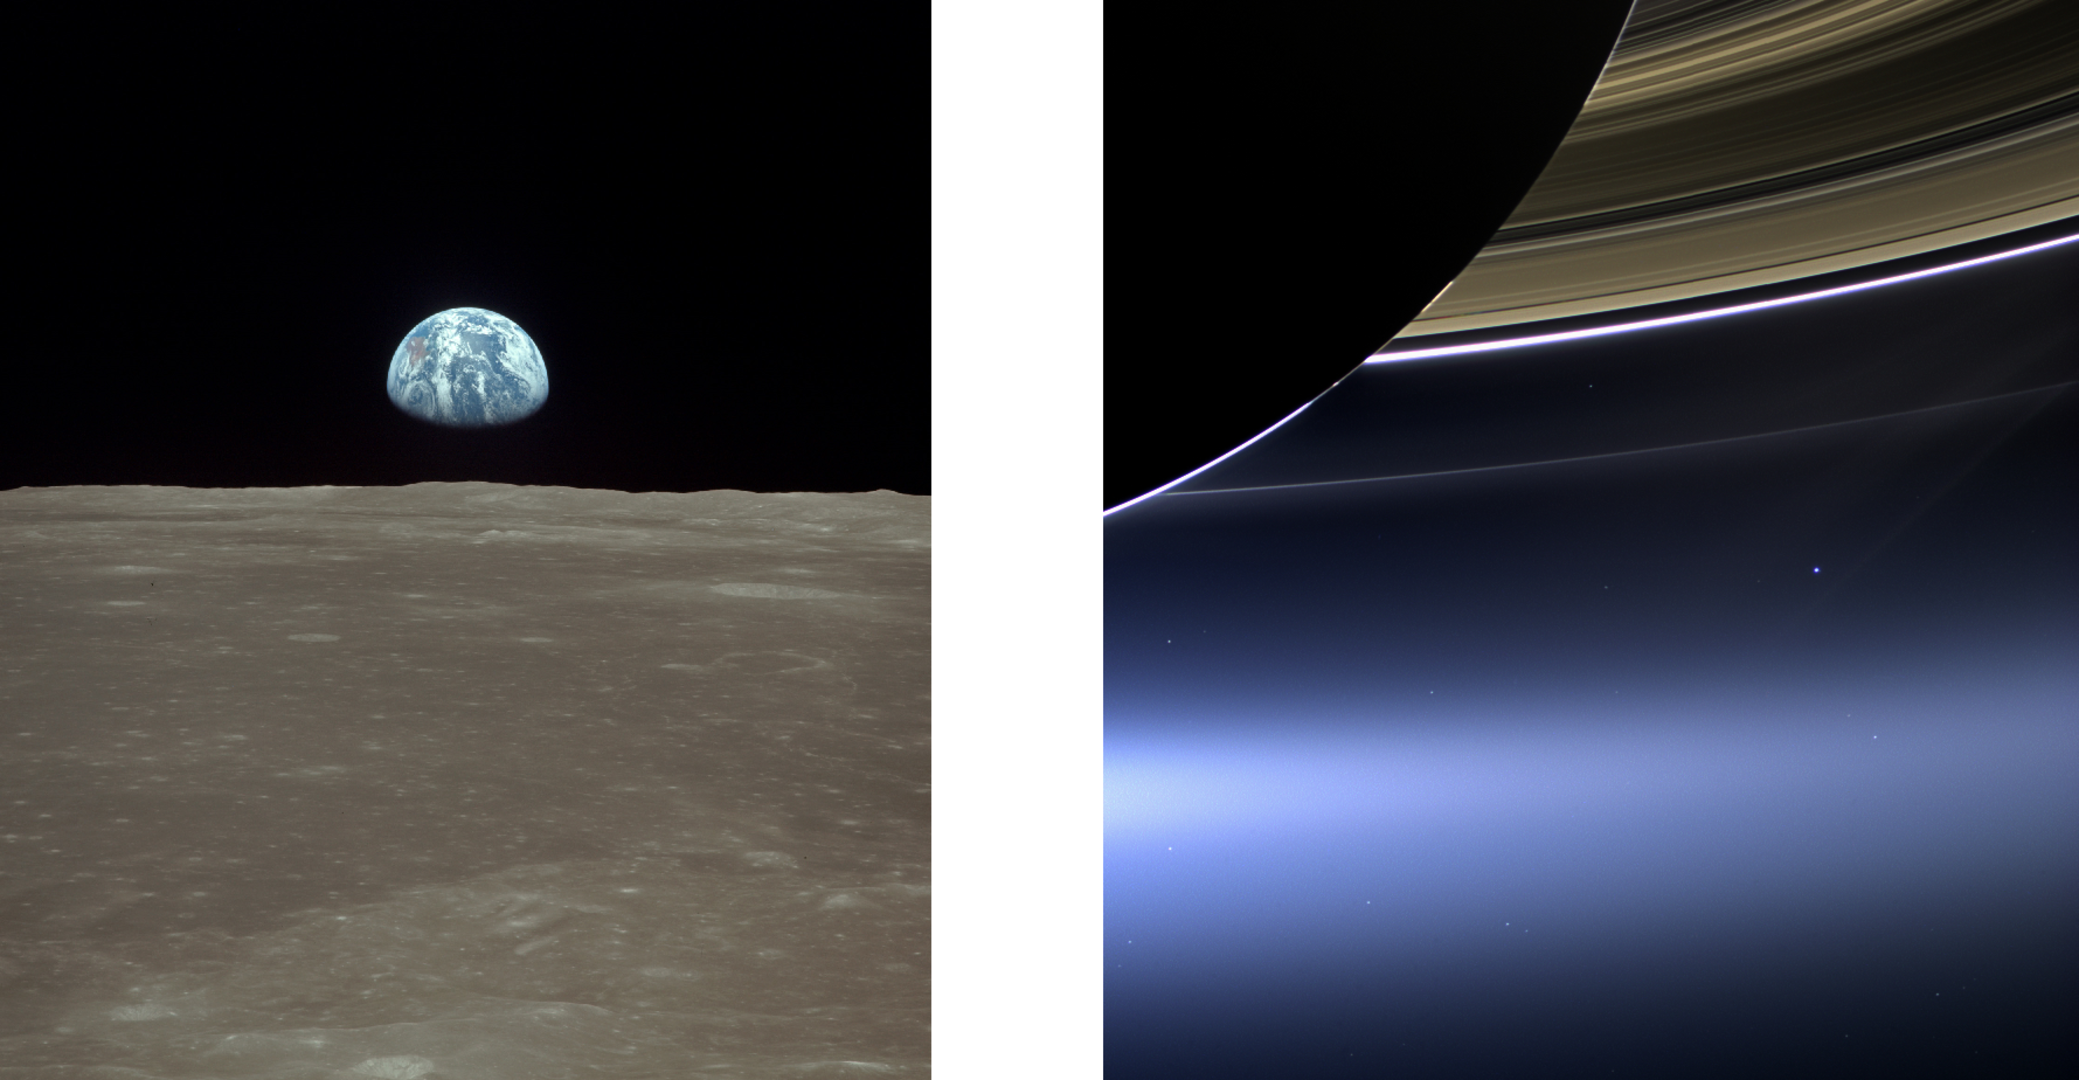 Sicht auf die Erde von Apollo 11 und Cassini